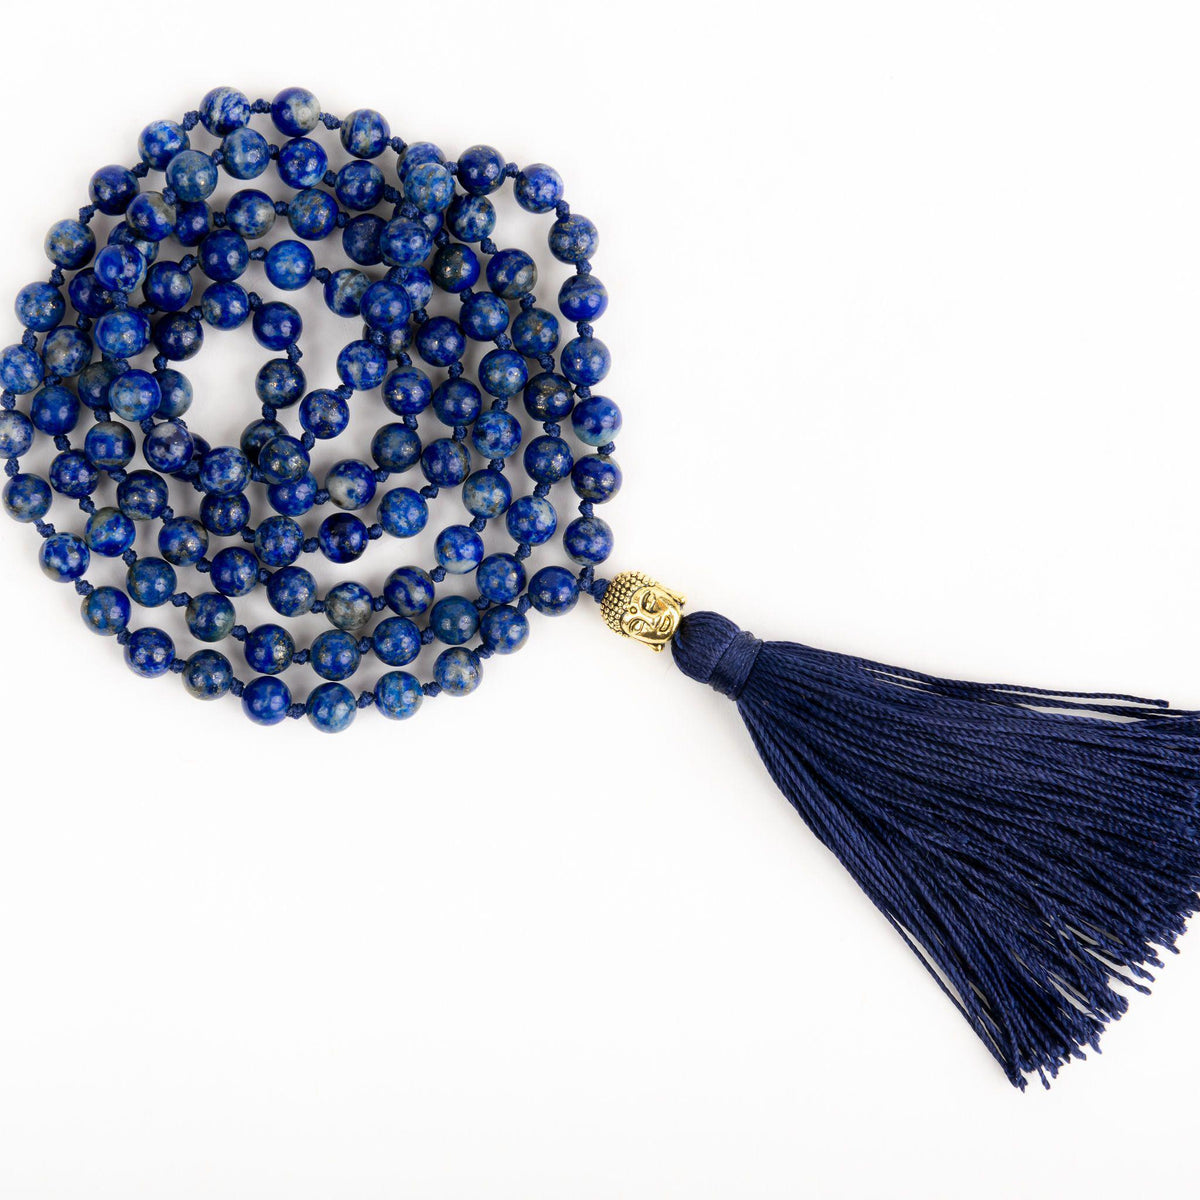 Blue Lapis Lazuli Mala Beads with Gold Buddha and Silk Tassel by MeraKalpa Malas 